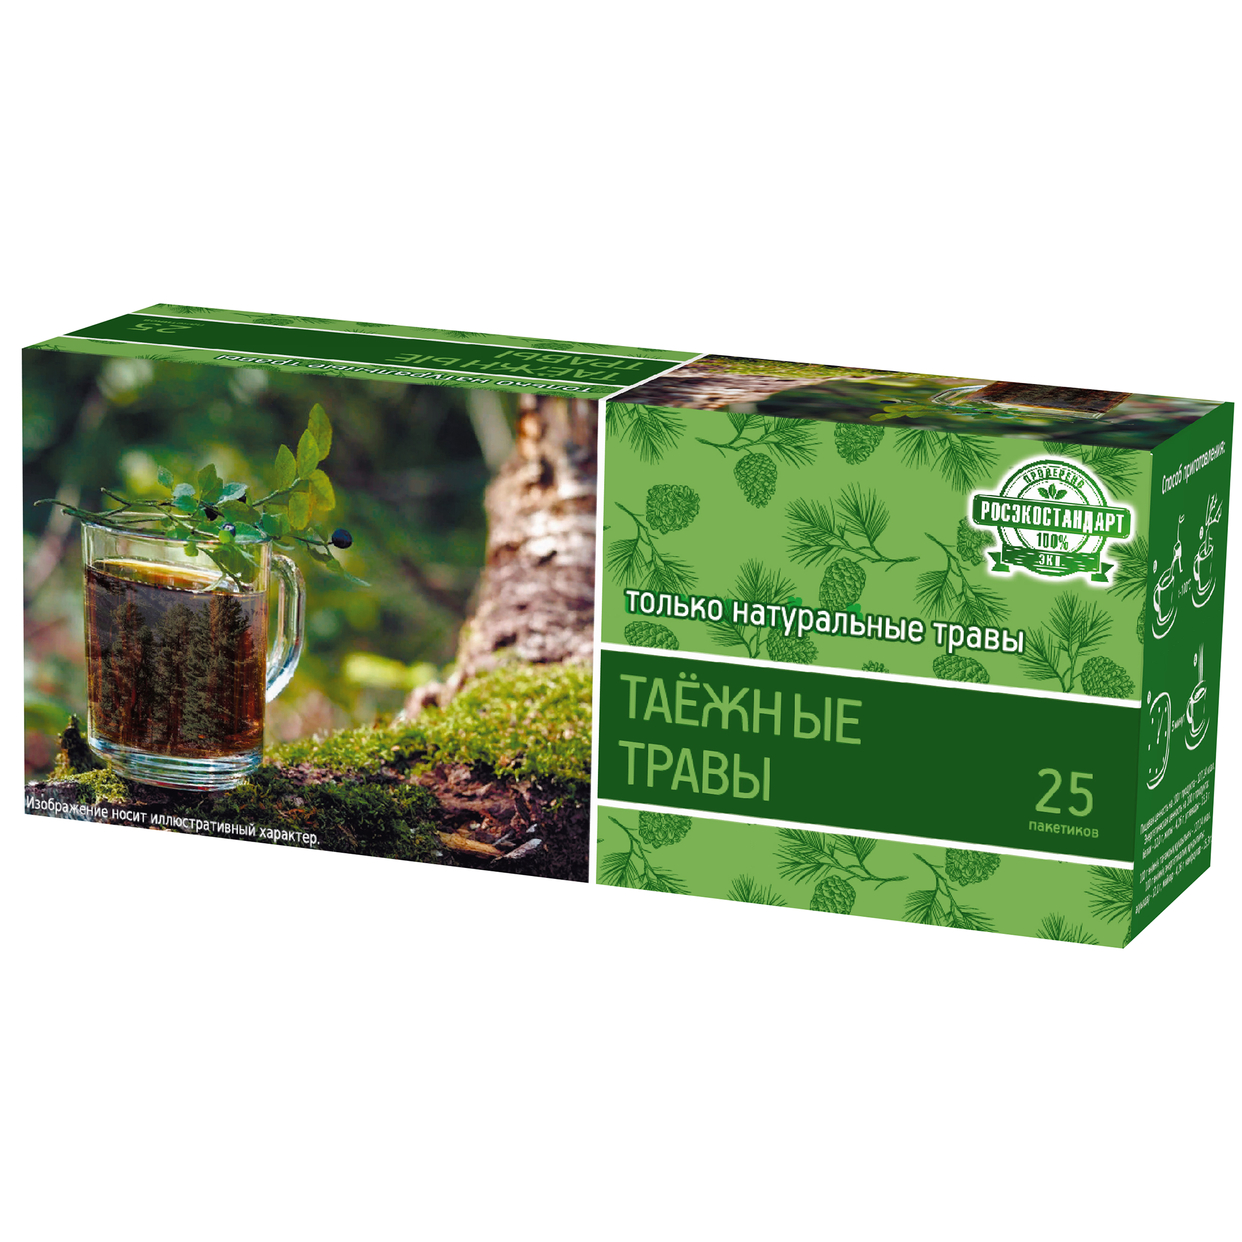 Напиток чайный "Таежные травы" пакетированный, 25 пак, 37,5 г по акции в Пятерочке